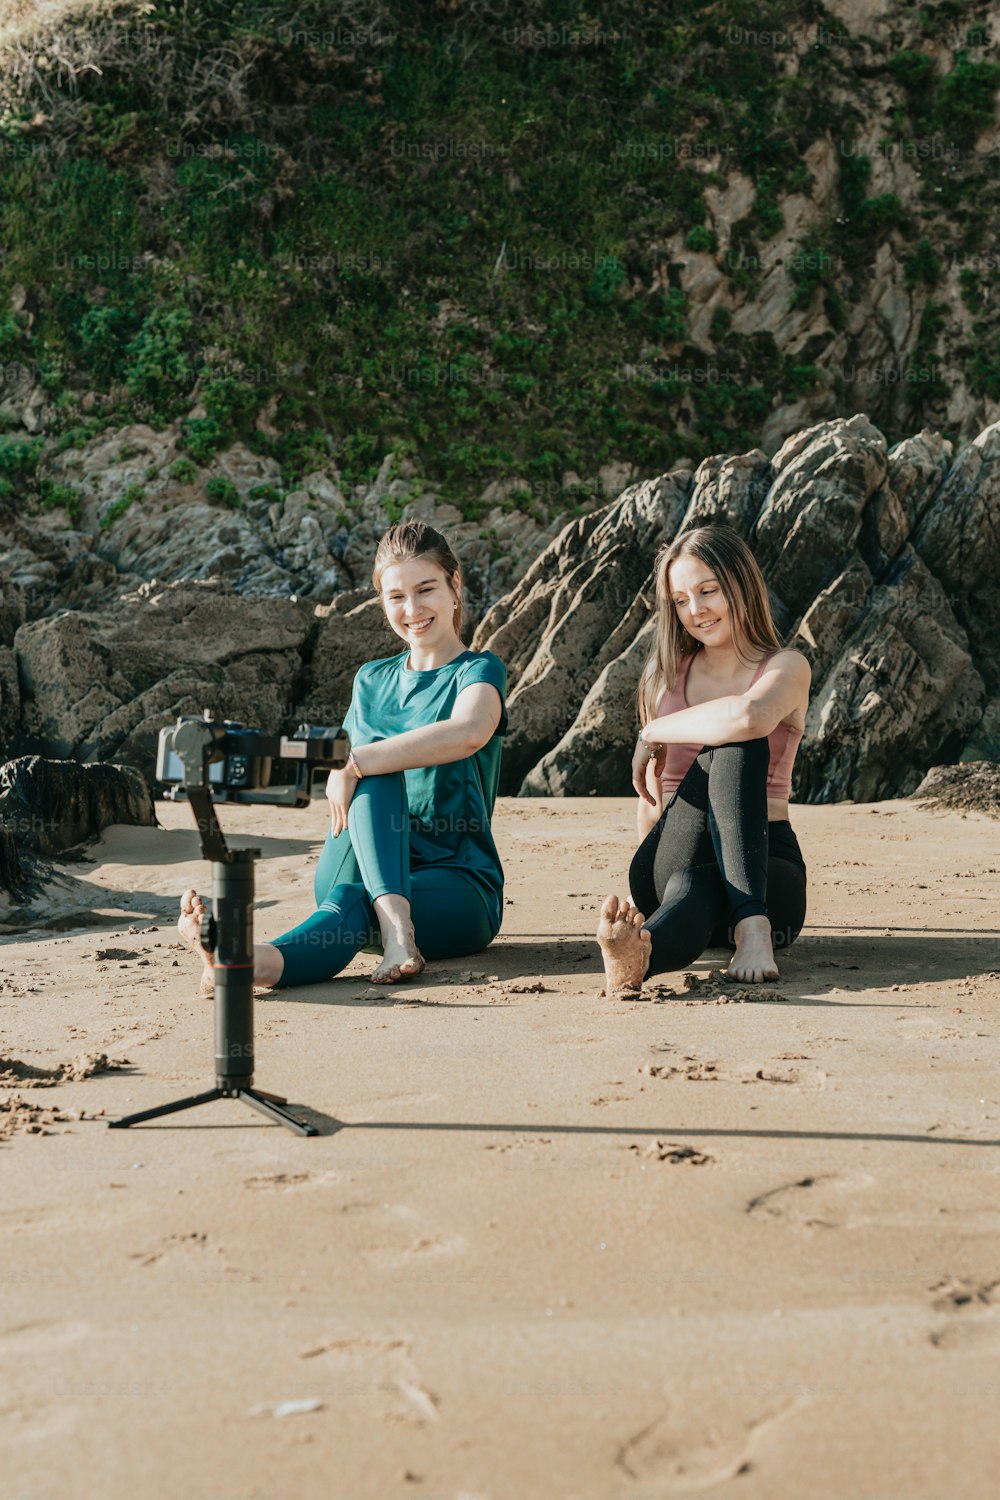 모래 사장 위에 앉아 있는 두 소녀